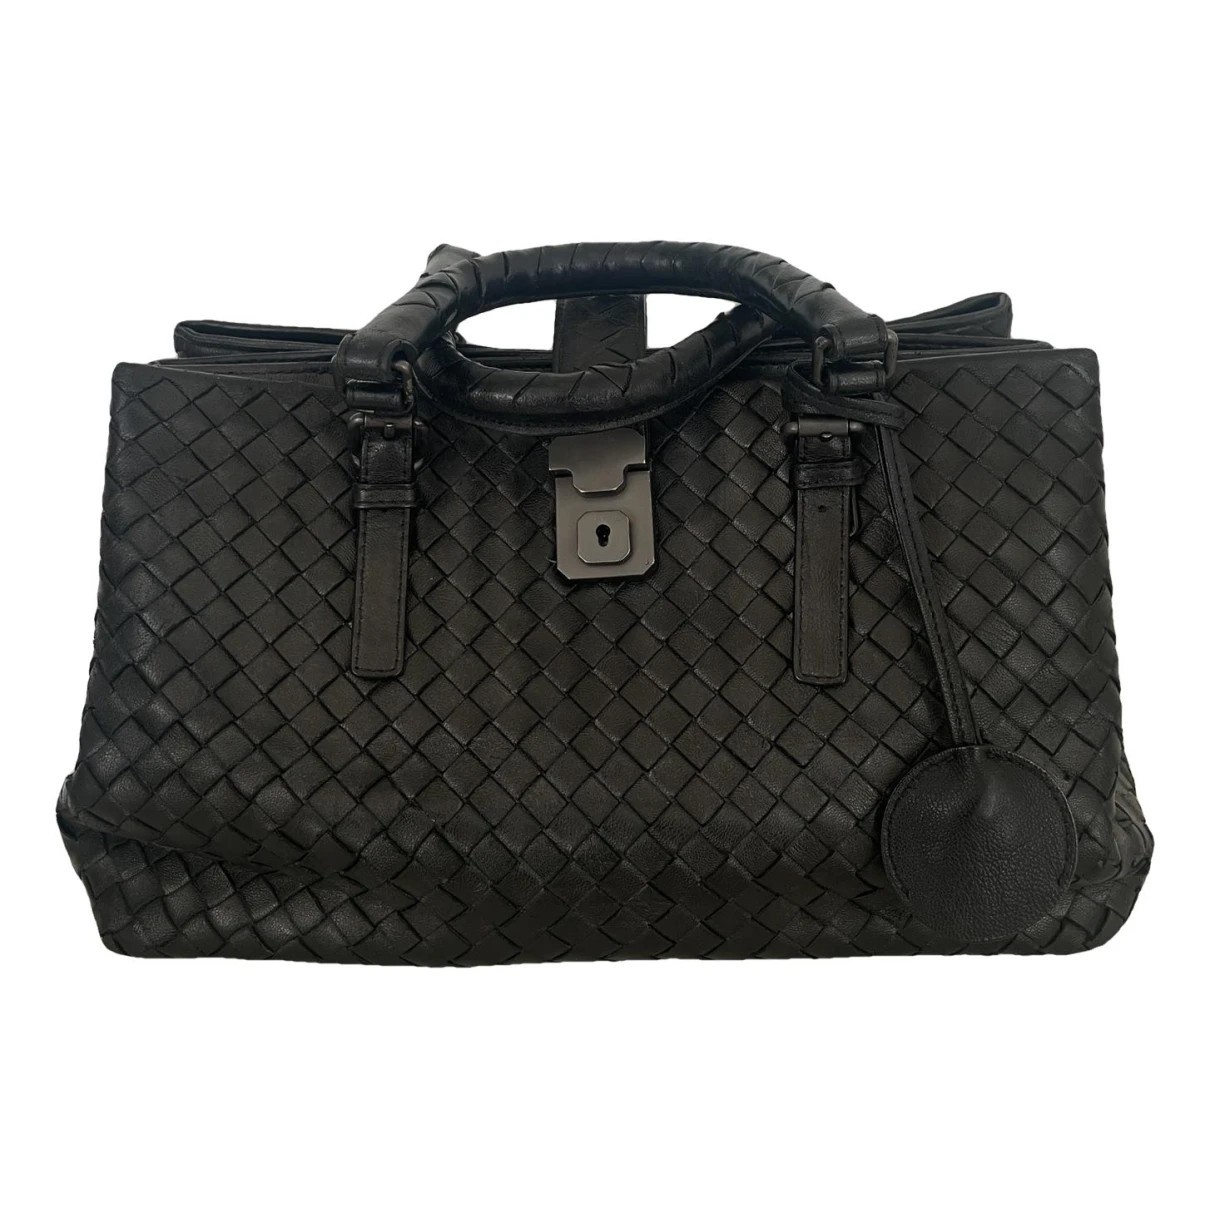 Pre-owned Bottega Veneta Roma Leather Handbag In Black